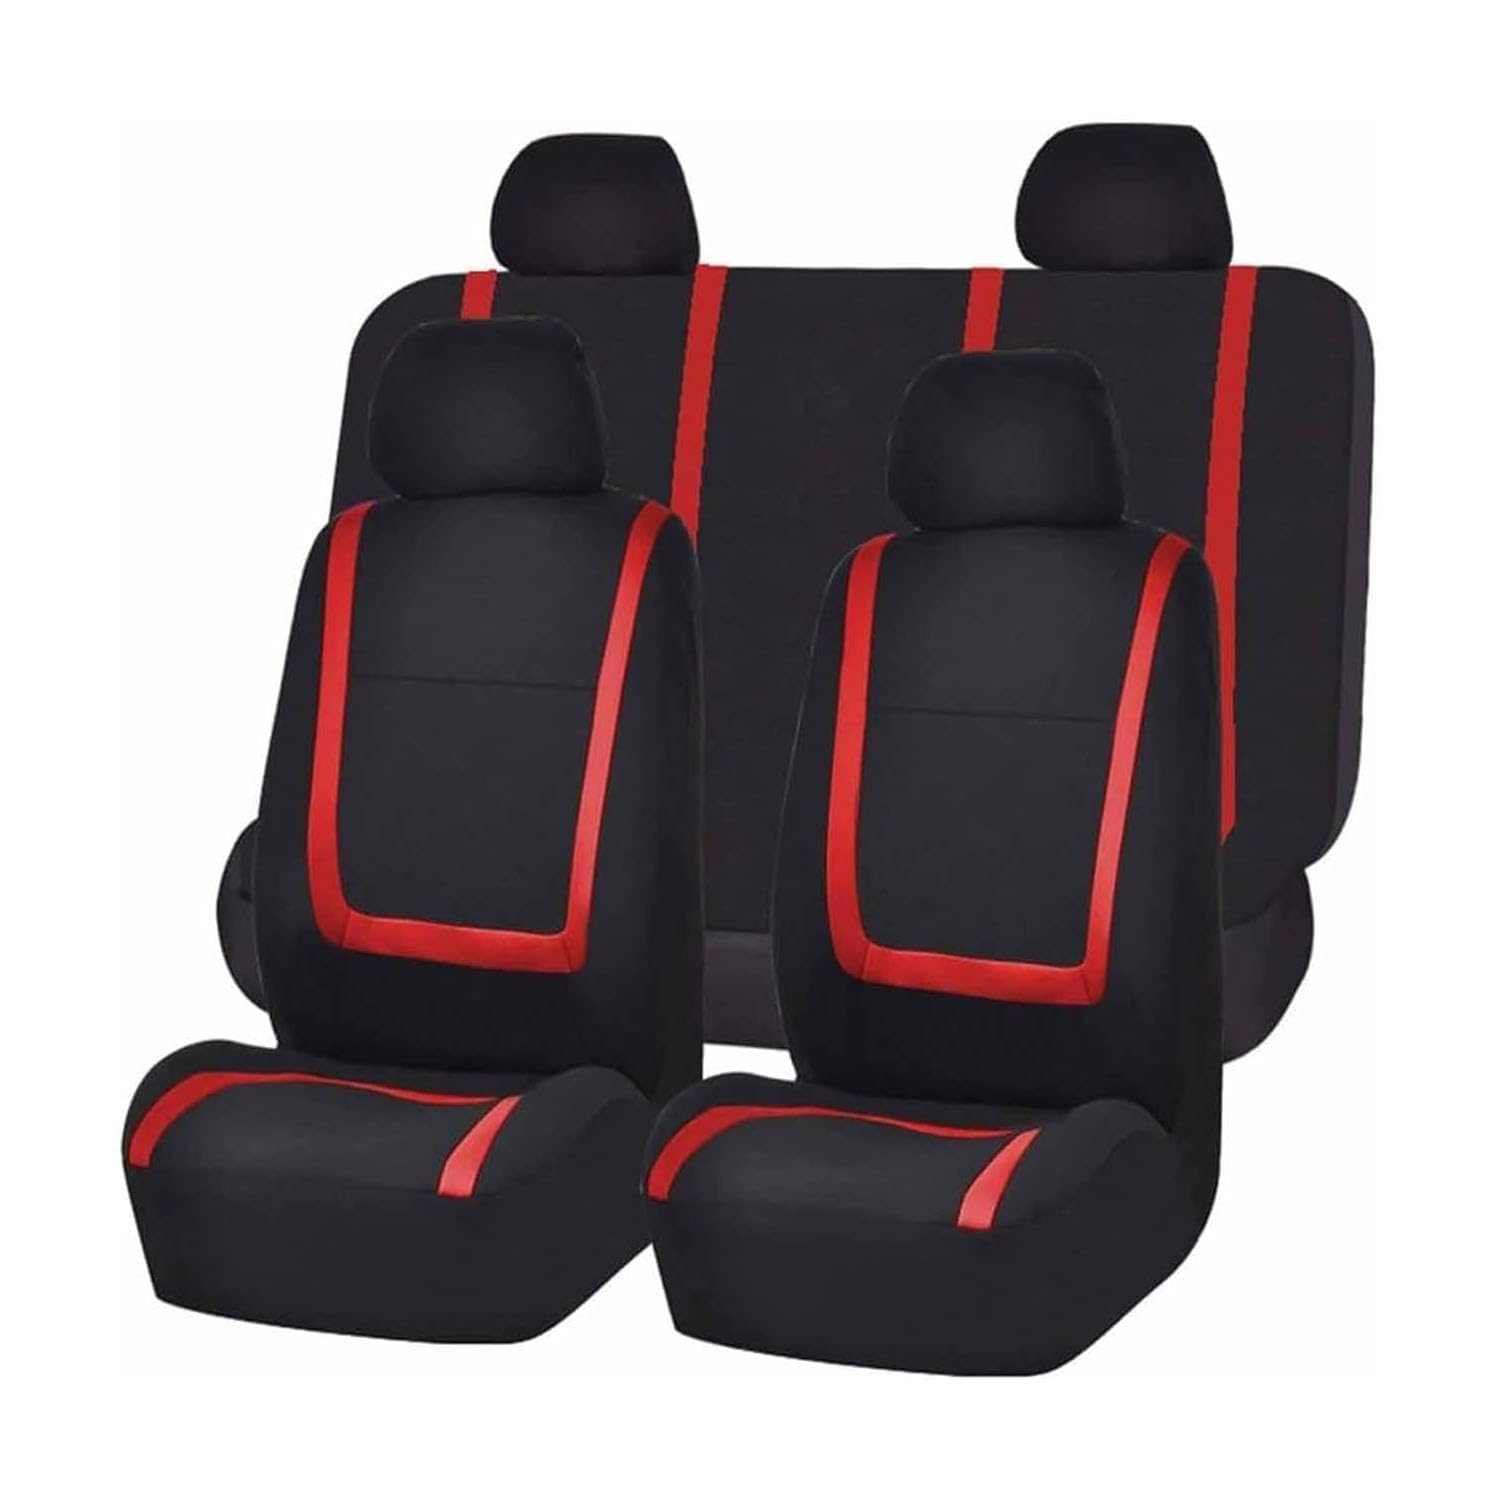 VewZJJ Auto Sitzbezügesets für Hyundai Accent/Elantra,Komfortabler Atmungsaktiv Sitzschoner Satz Sitzbezug,rutschfest Wasserdichter Vorne RüCkbank Autositz SitzbezüGe,Black-Red von VewZJJ